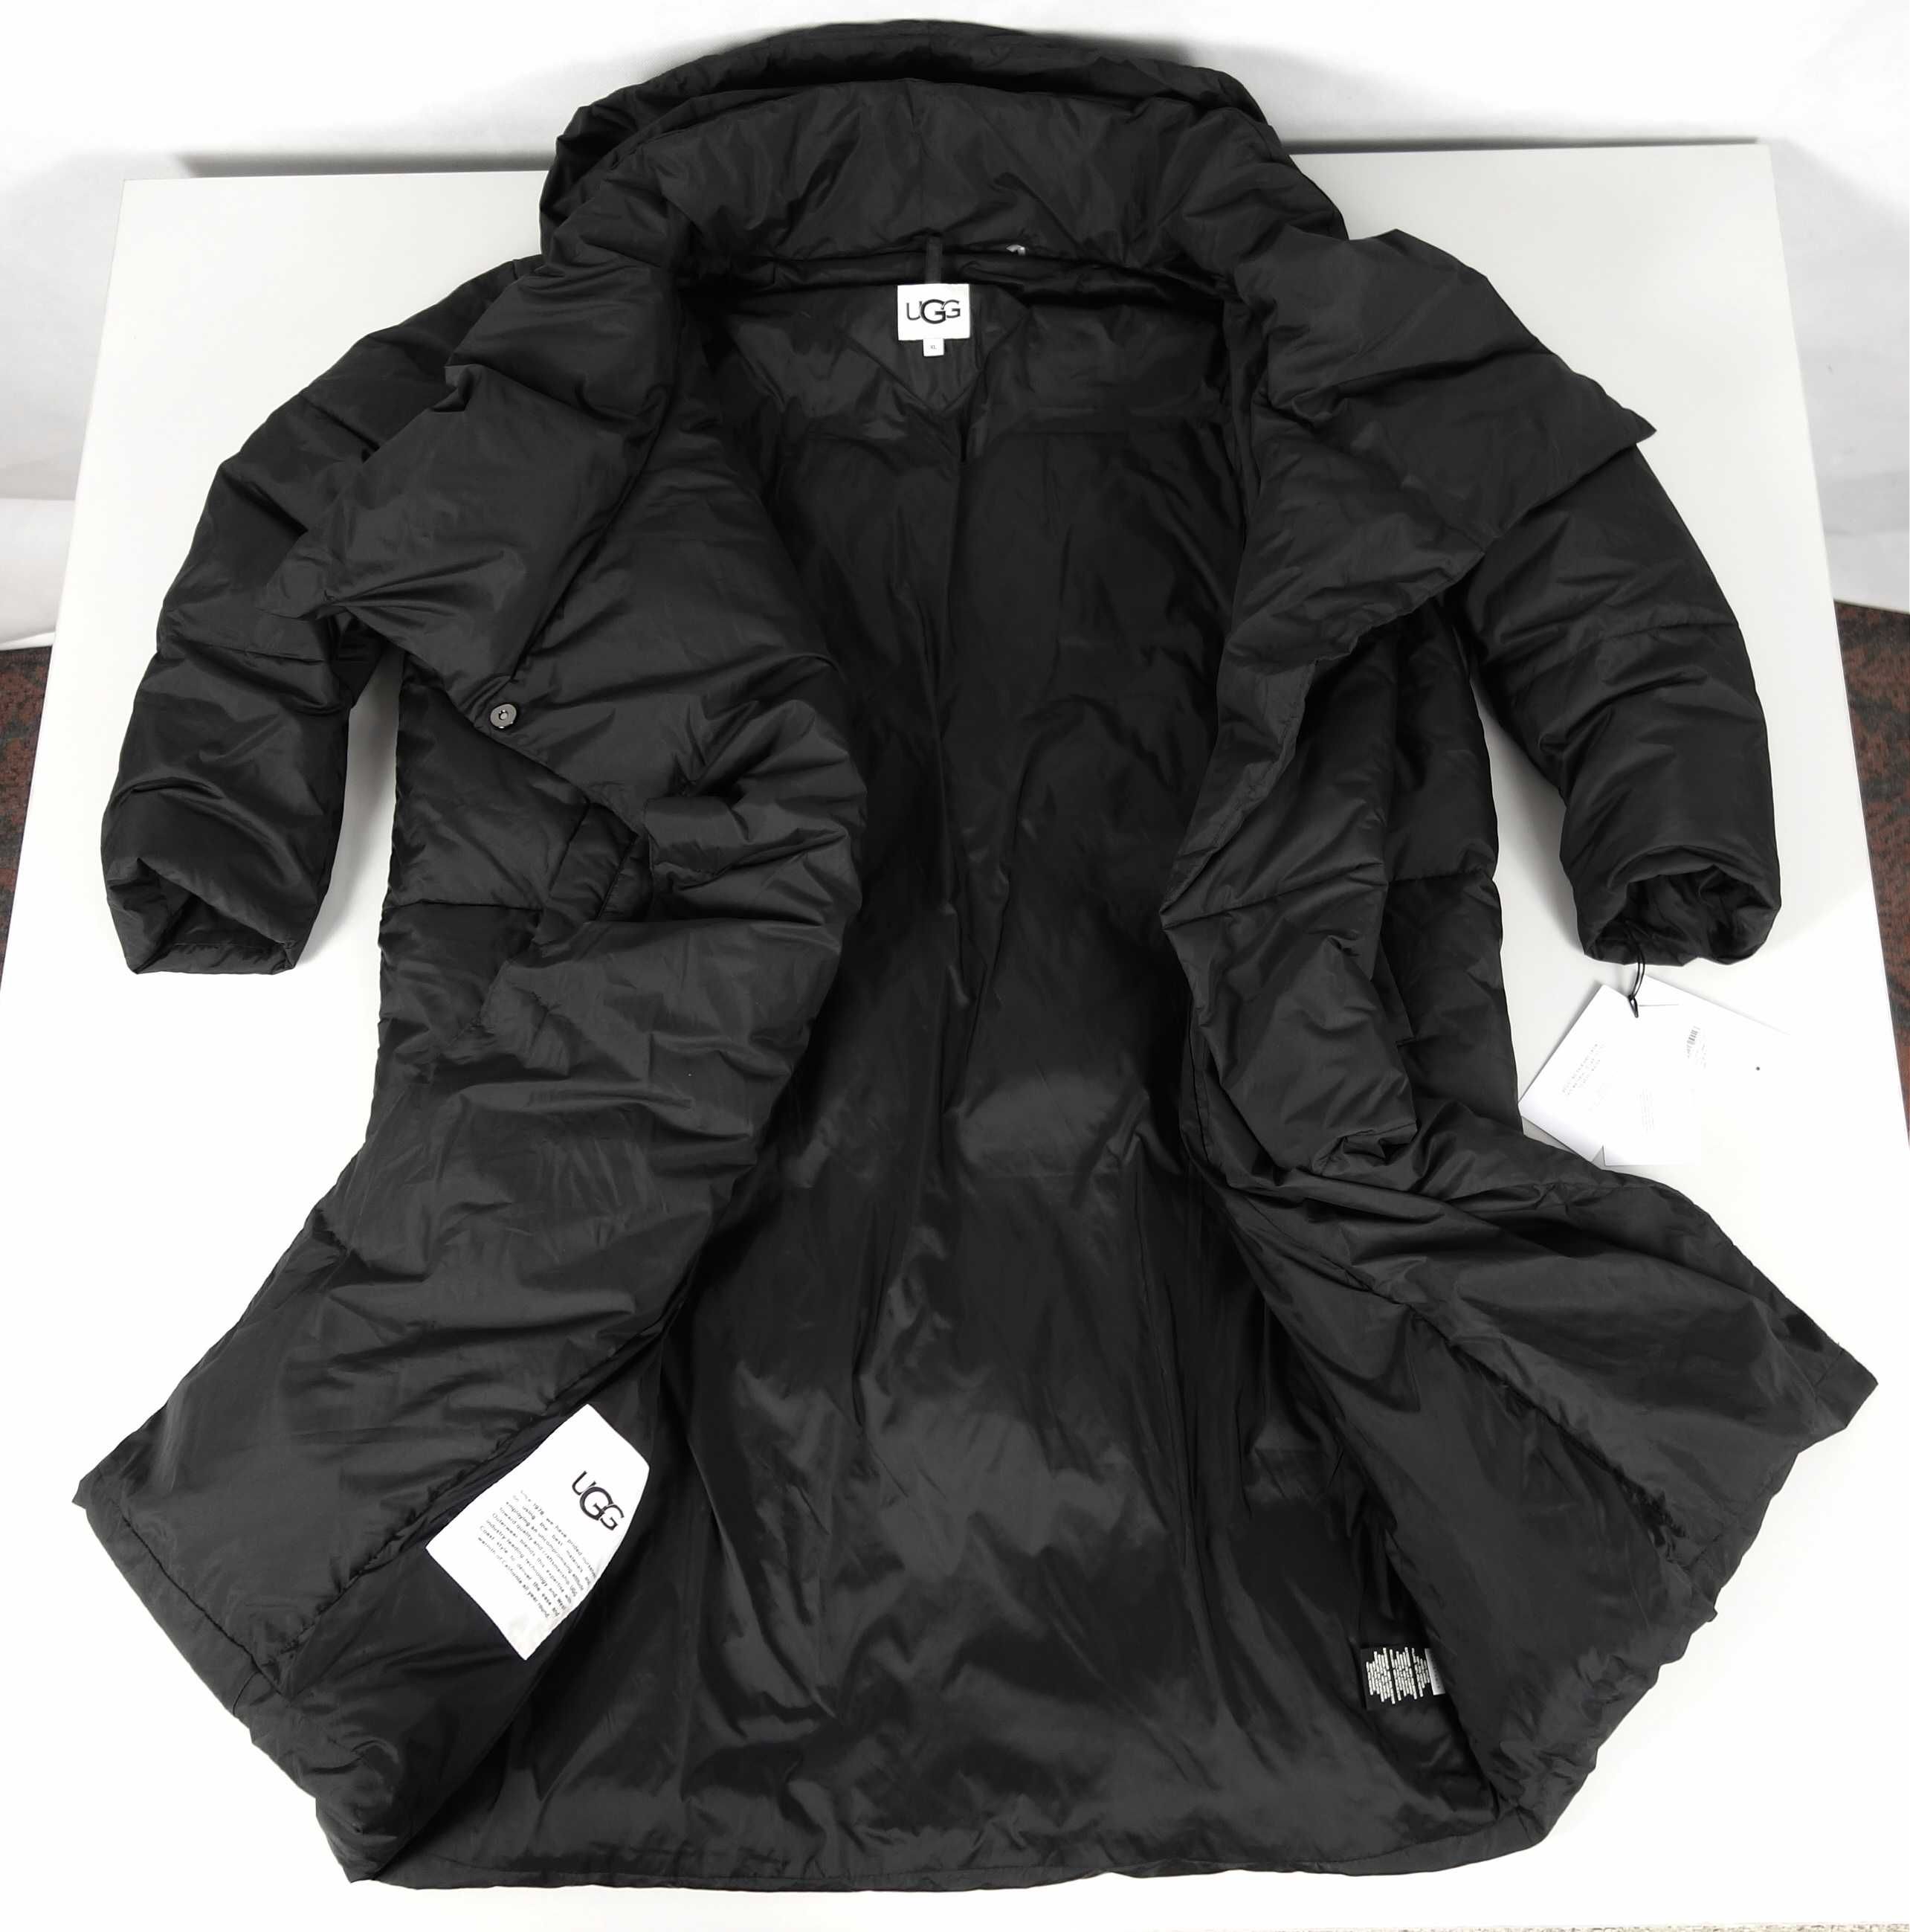 UGG Catherina nowy płaszcz puchowy damski zimowy nowa kolekcja XL